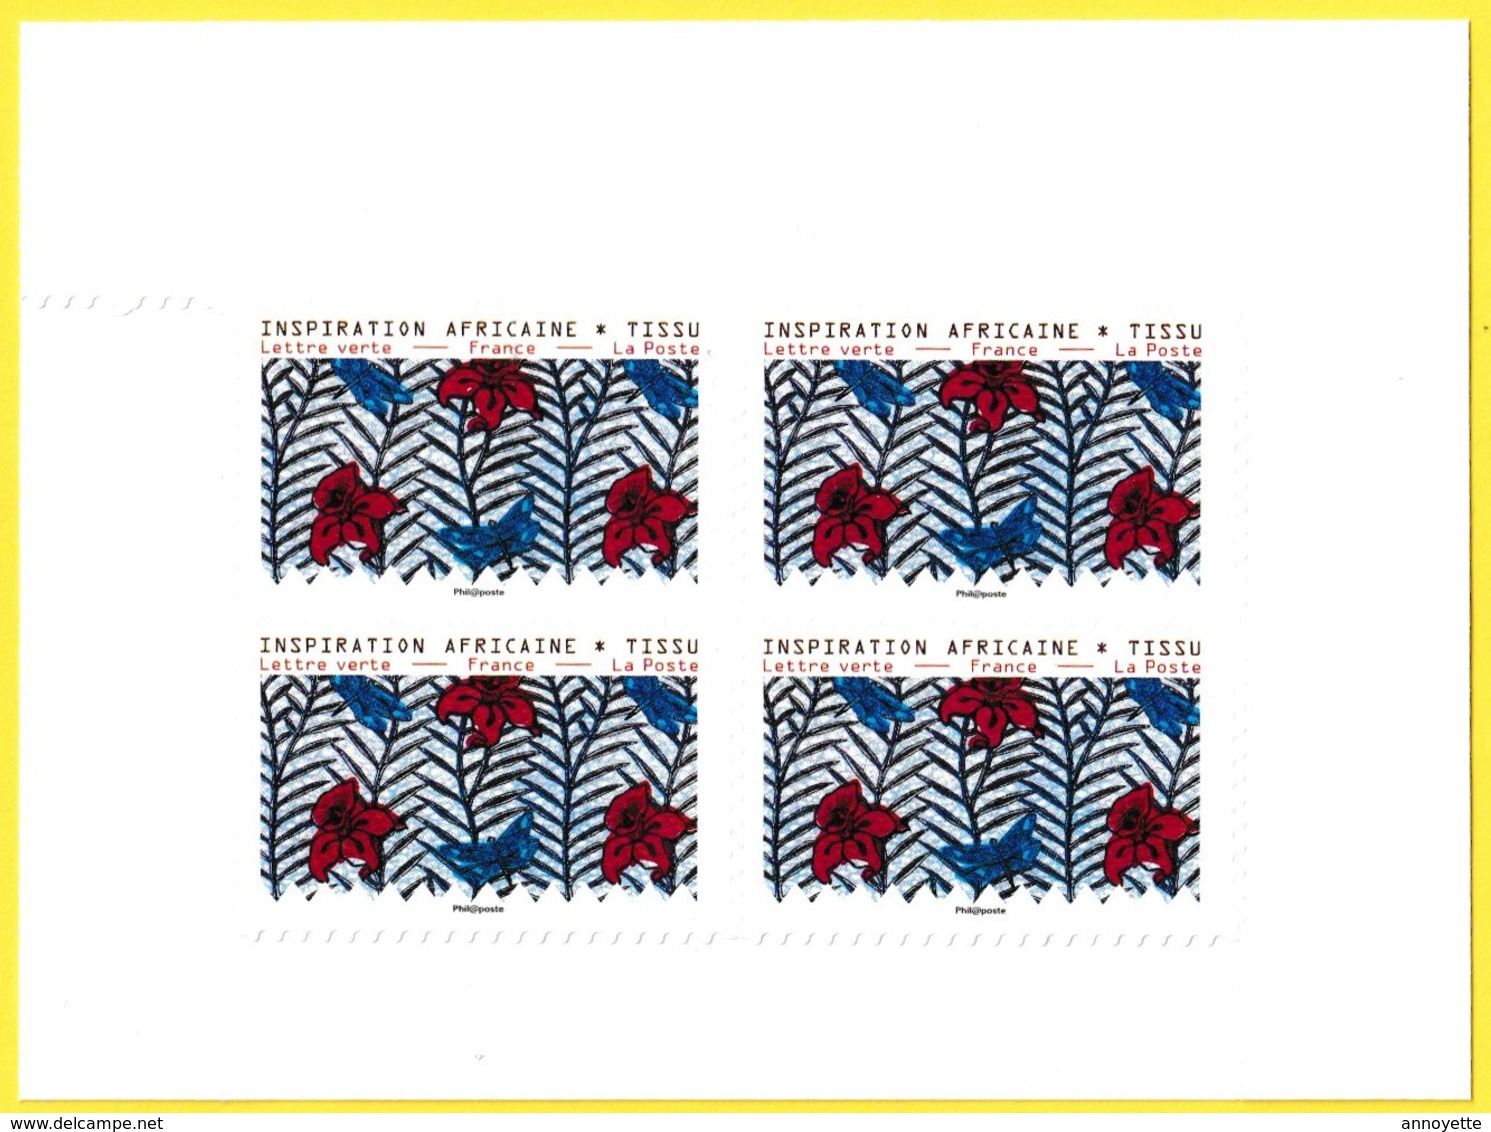 Bloc De 4 Timbres-poste Neufs** - Inspiration Africaine Tissu Adhésifs Entreprises - France 2019 - Unused Stamps